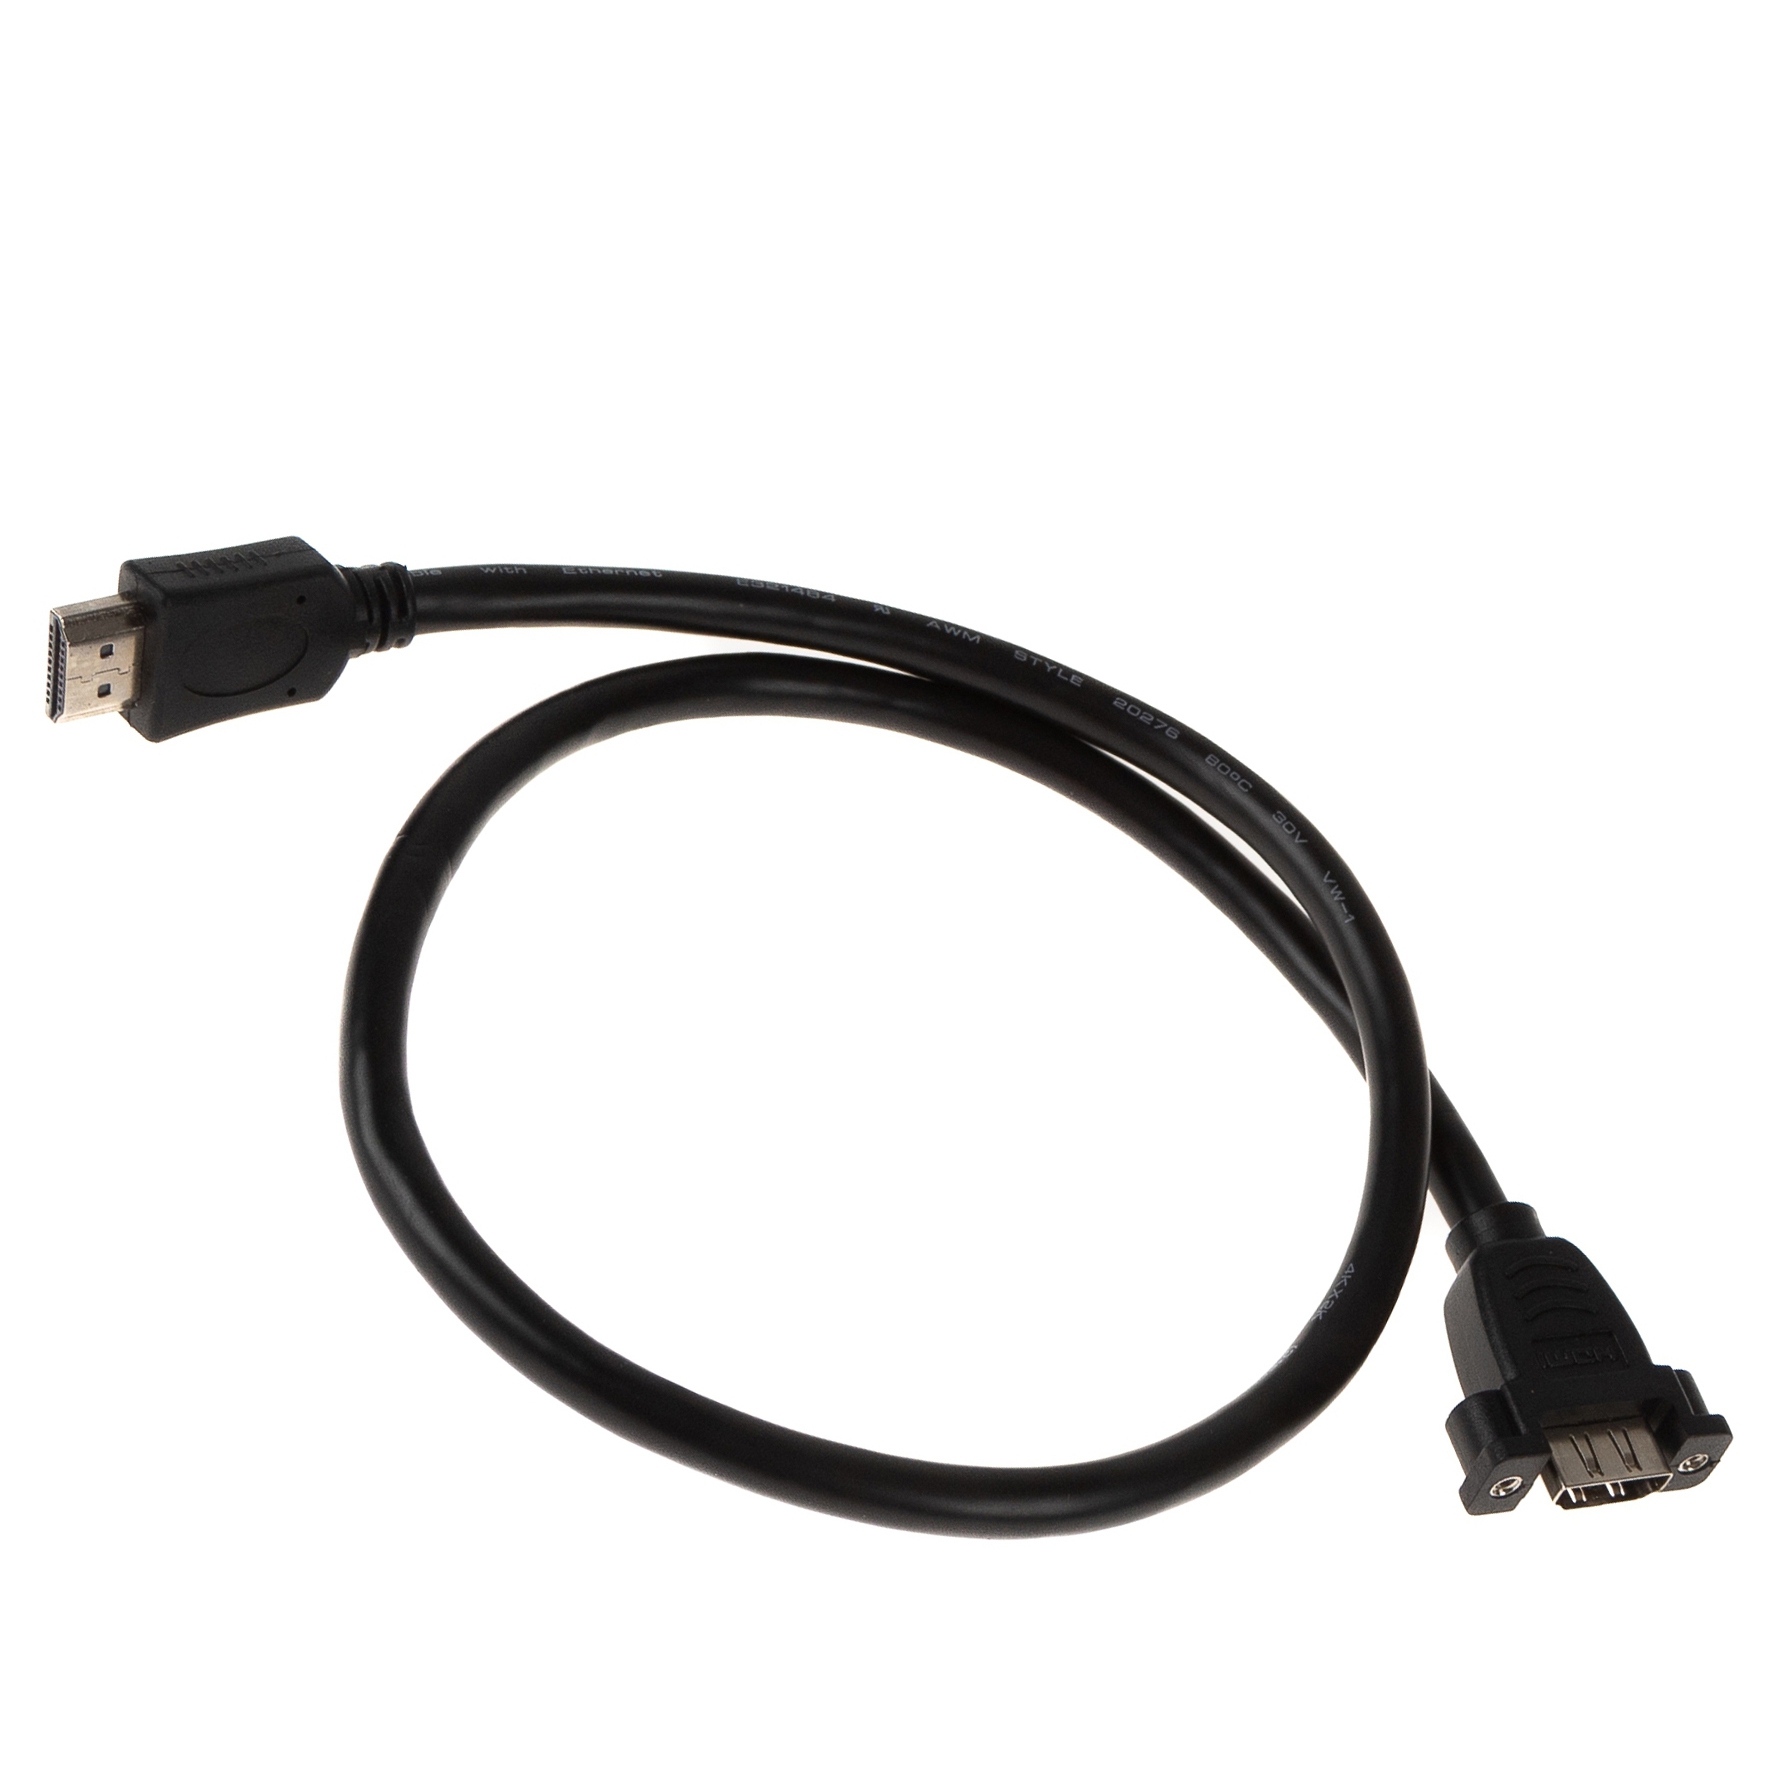 Câble HDMI pour montage sur panneau, A femelle vissable vers A mâle, 4K2K, 60cm